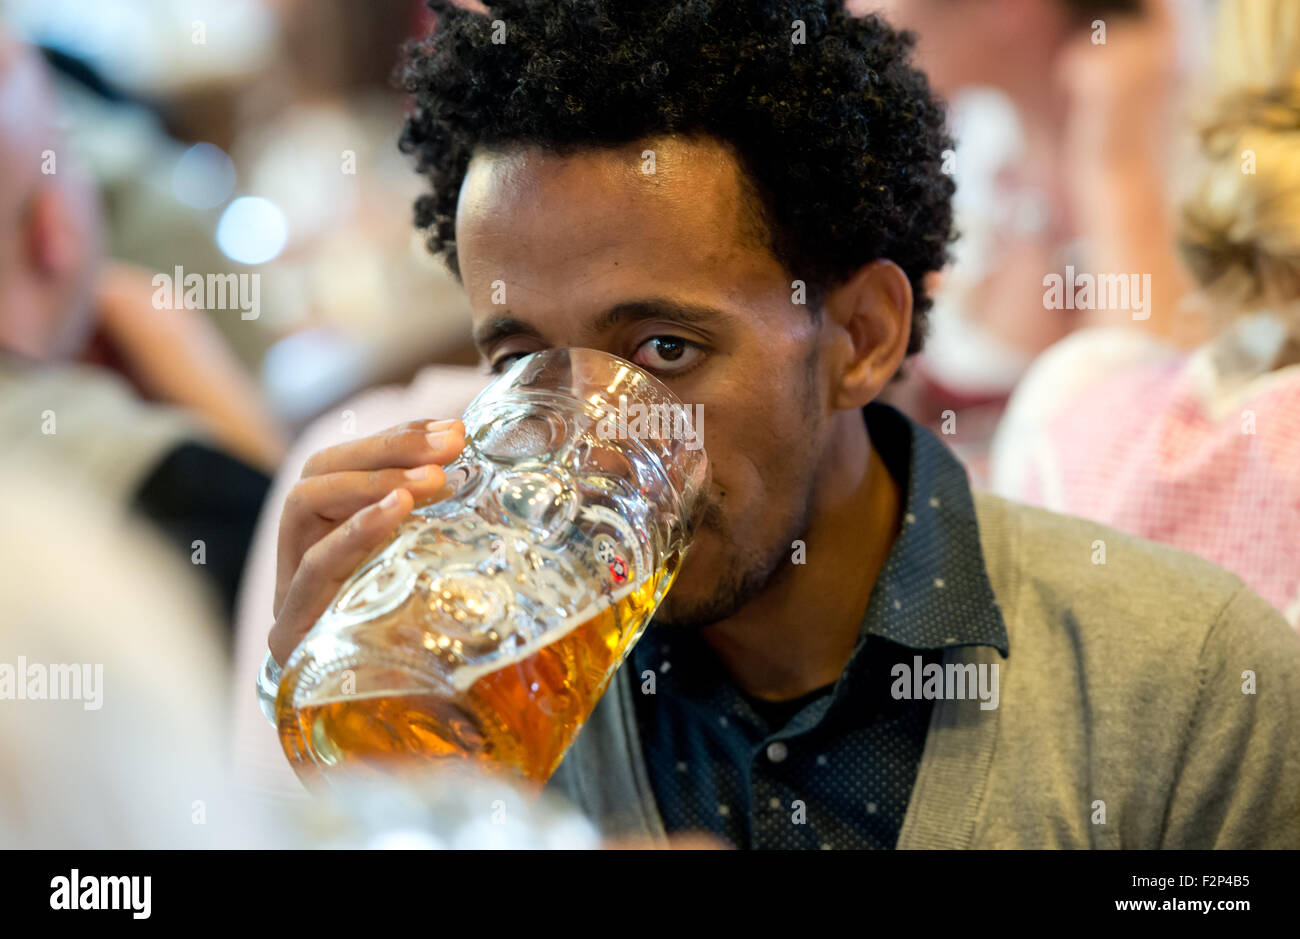 Ein Asylbewerber aus Eritrea genießt die Erfrischungen Sonntag an einem der berühmten Bierzelten des Oktoberfestes. Freiwillige in München nahm eine Gruppe von Asylsuchenden, die weltweit größte Messe, die bekannt ist für sein Bier, bayerische Mode und Spaß. DPA/SVEN HOPPE Stockfoto